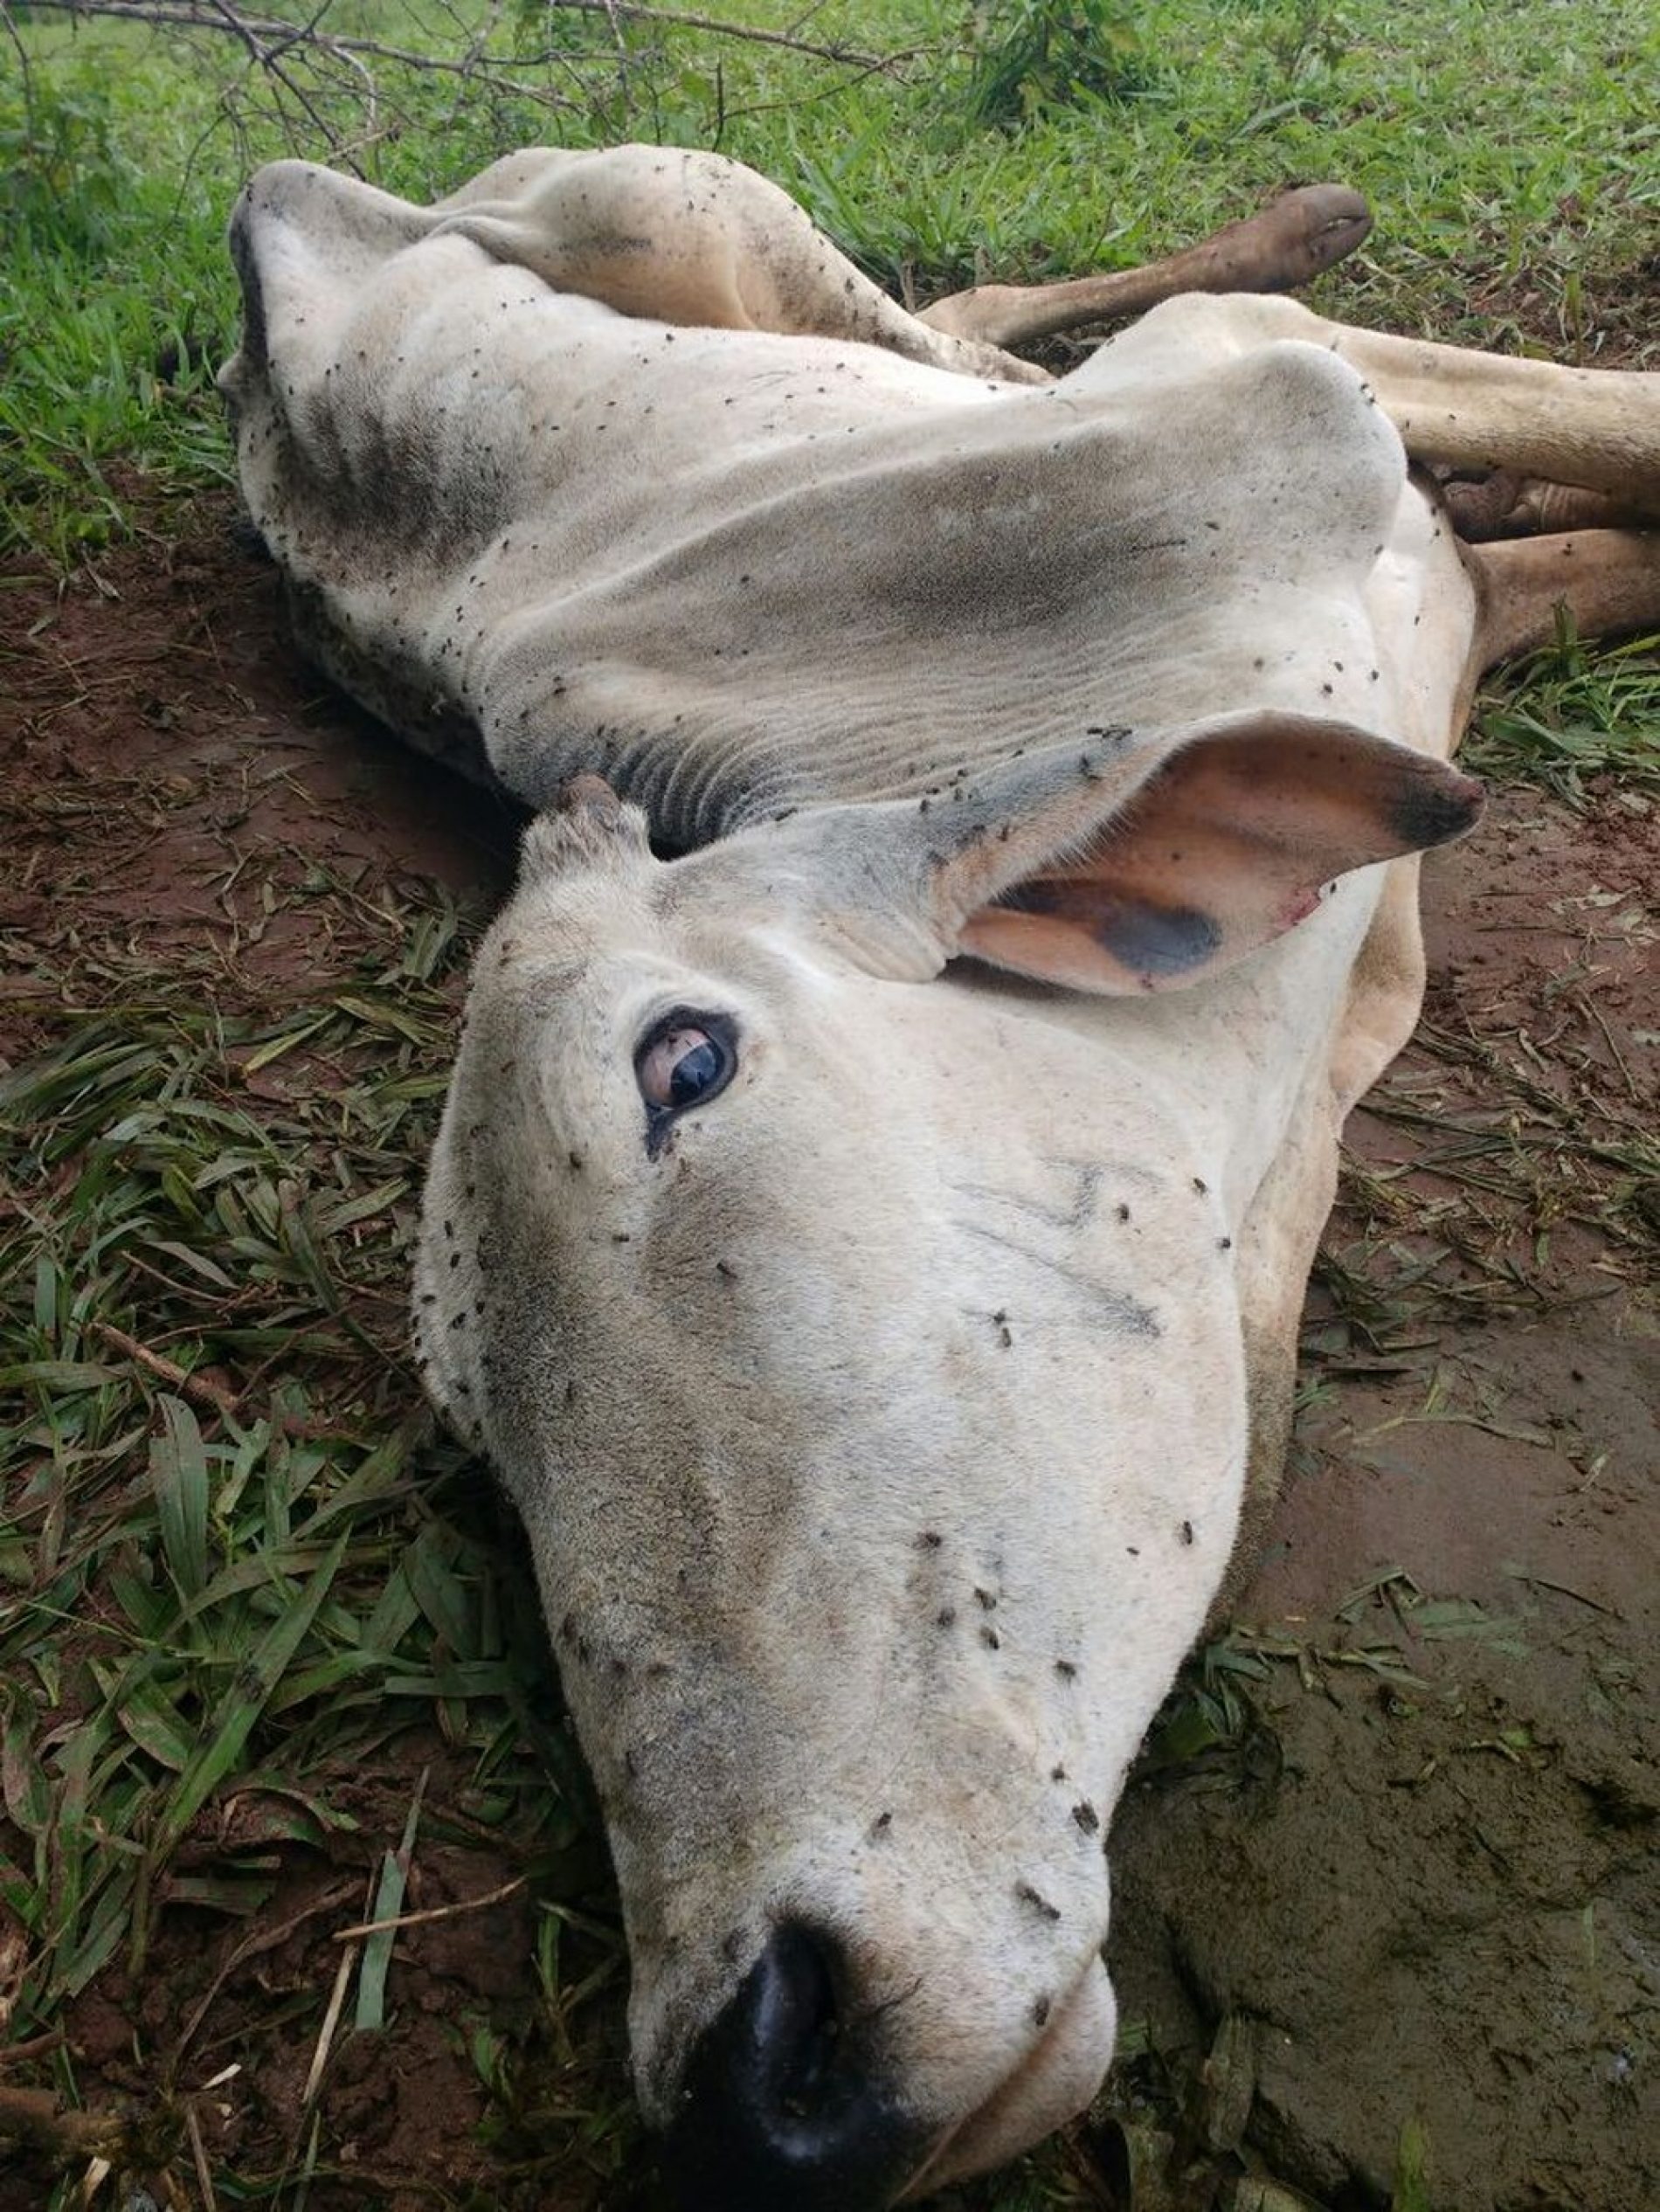 REGIÃO: Polícia Ambiental multa dono de sítio em R$ 140 mil por deixar gado agonizando em pasto